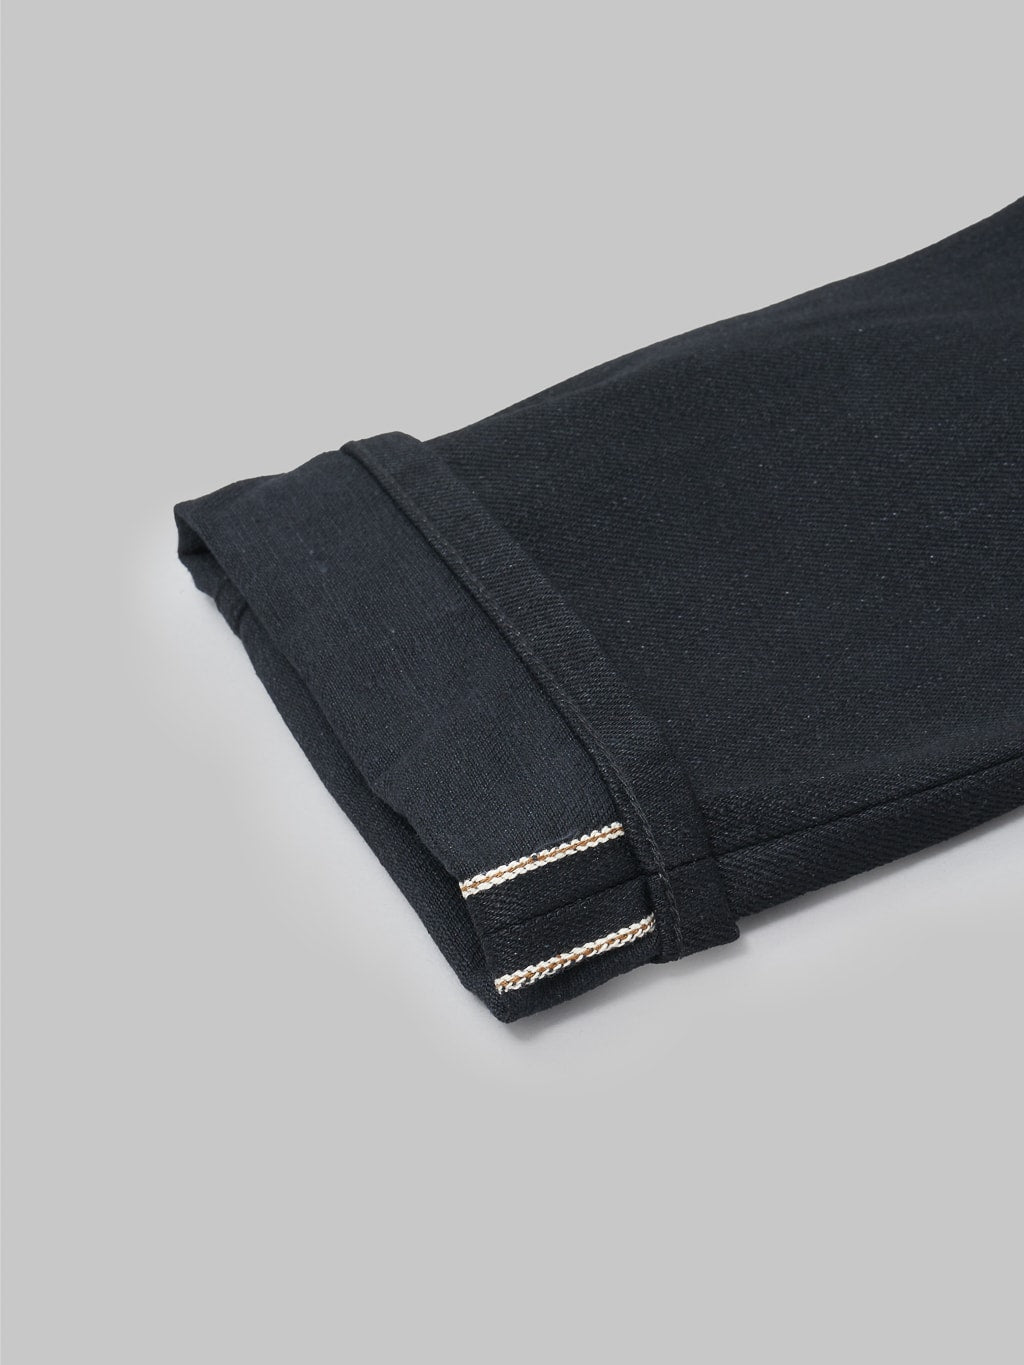 Freenote Cloth Avila 17oz Black Denim Slim Taper Jeans selvedge